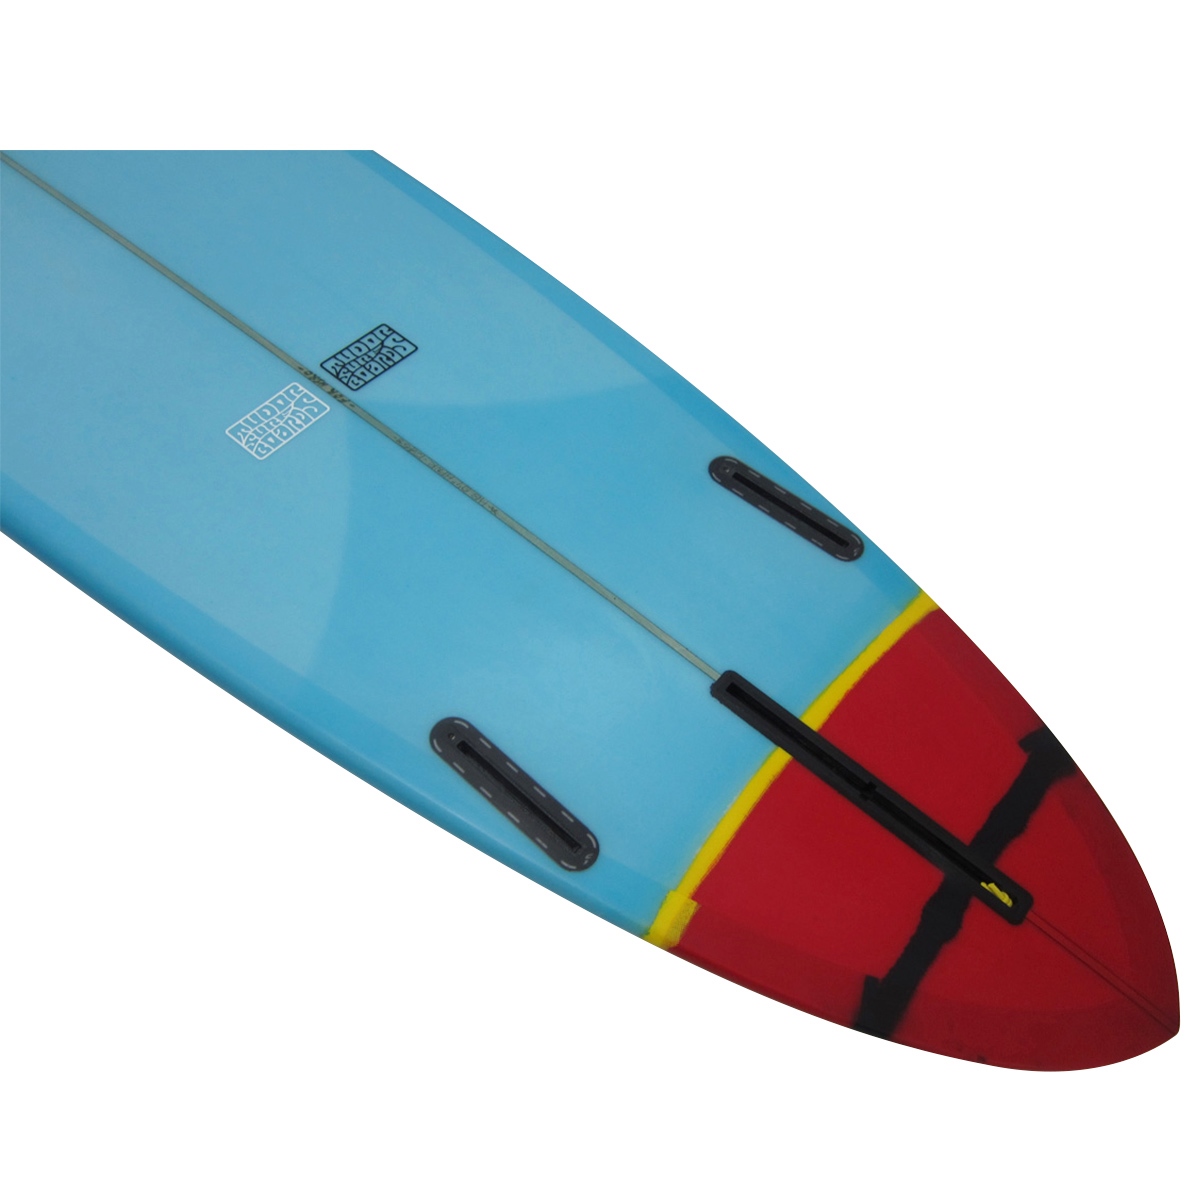 TUDOR SURFBOARDS / HPNR 9`1 Shaped By HANK BYZAK 